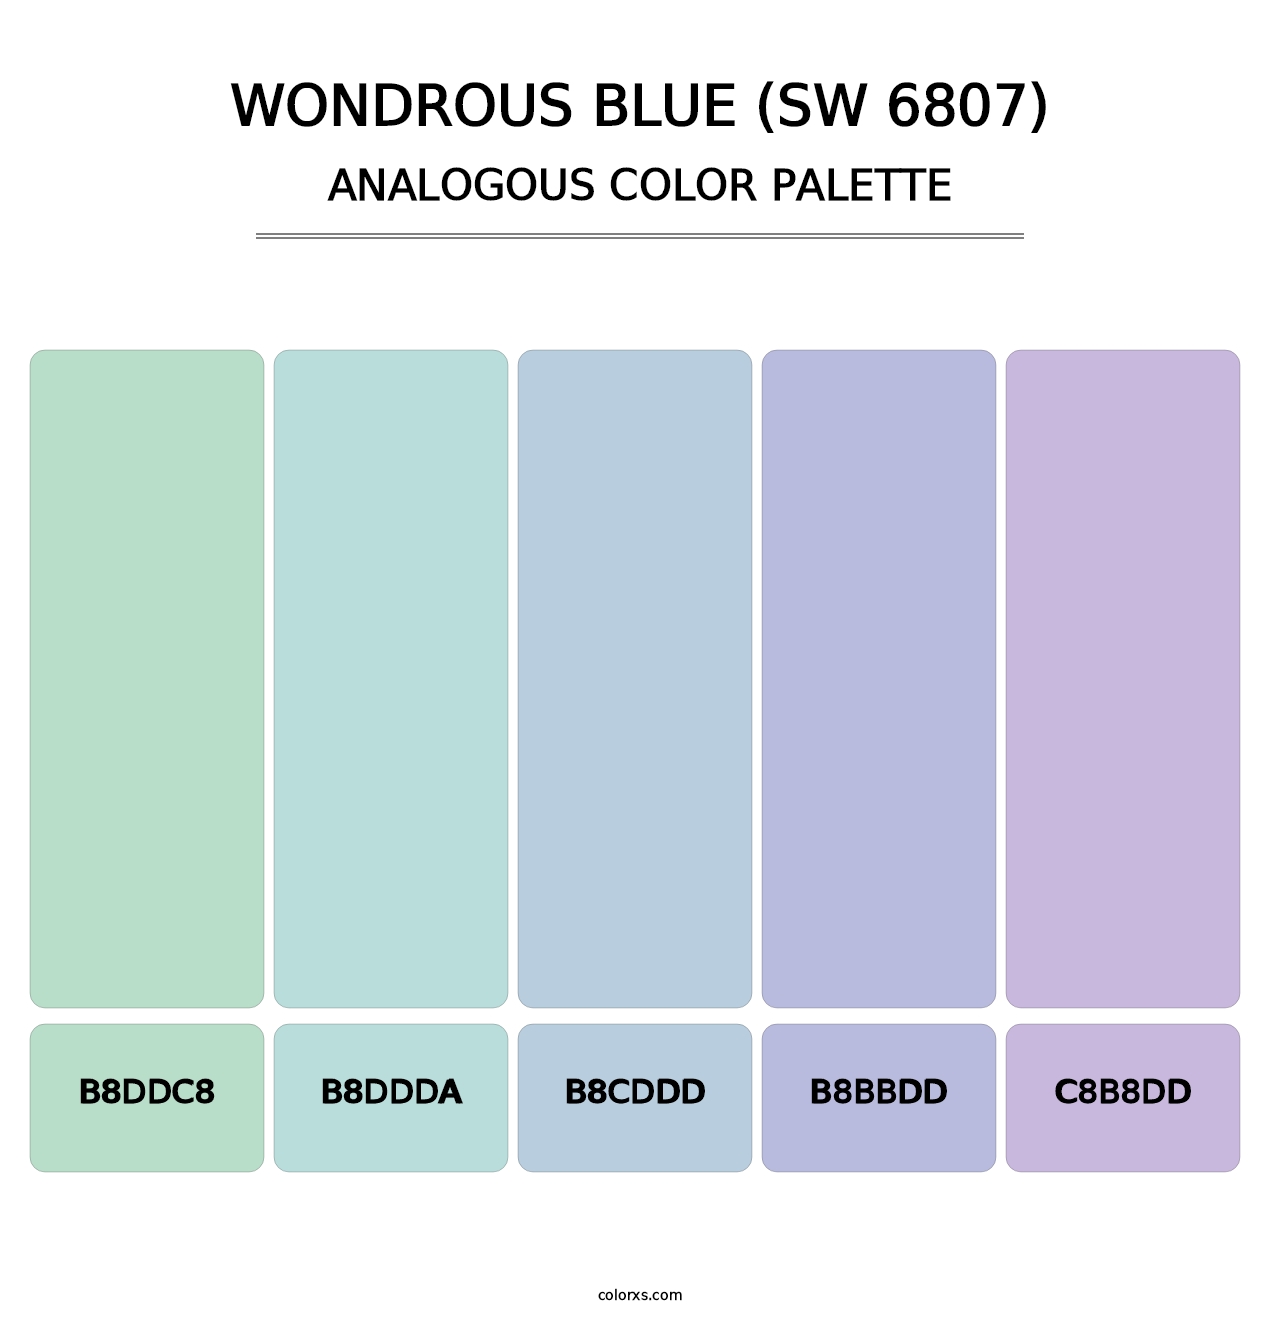 Wondrous Blue (SW 6807) - Analogous Color Palette